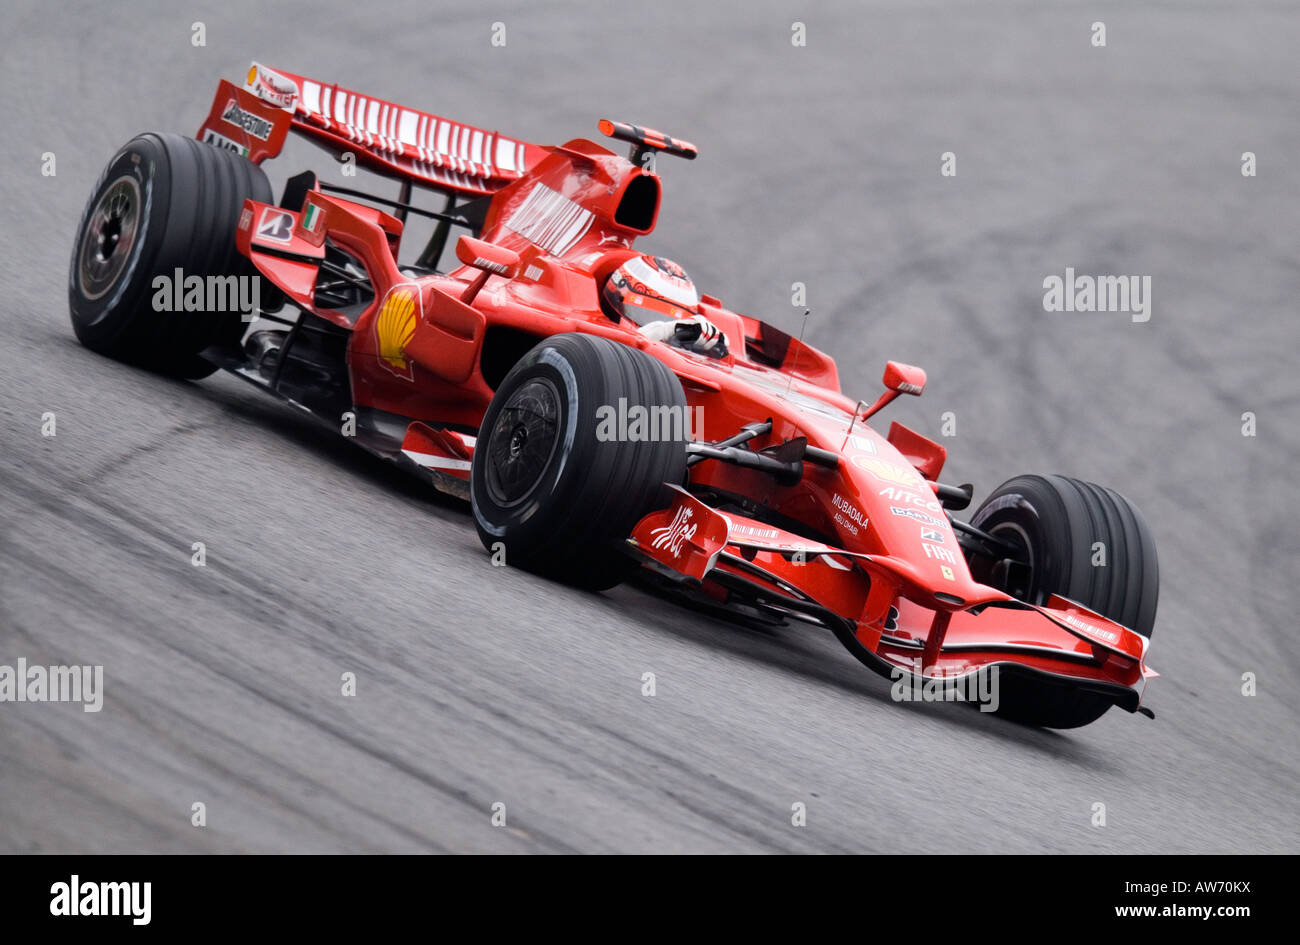 Kimi Raikkoenen FIN del Ferrari F2008 de carreras de Fórmula 1 durante sesiones de pruebas en el Circuit de Catalunya Foto de stock